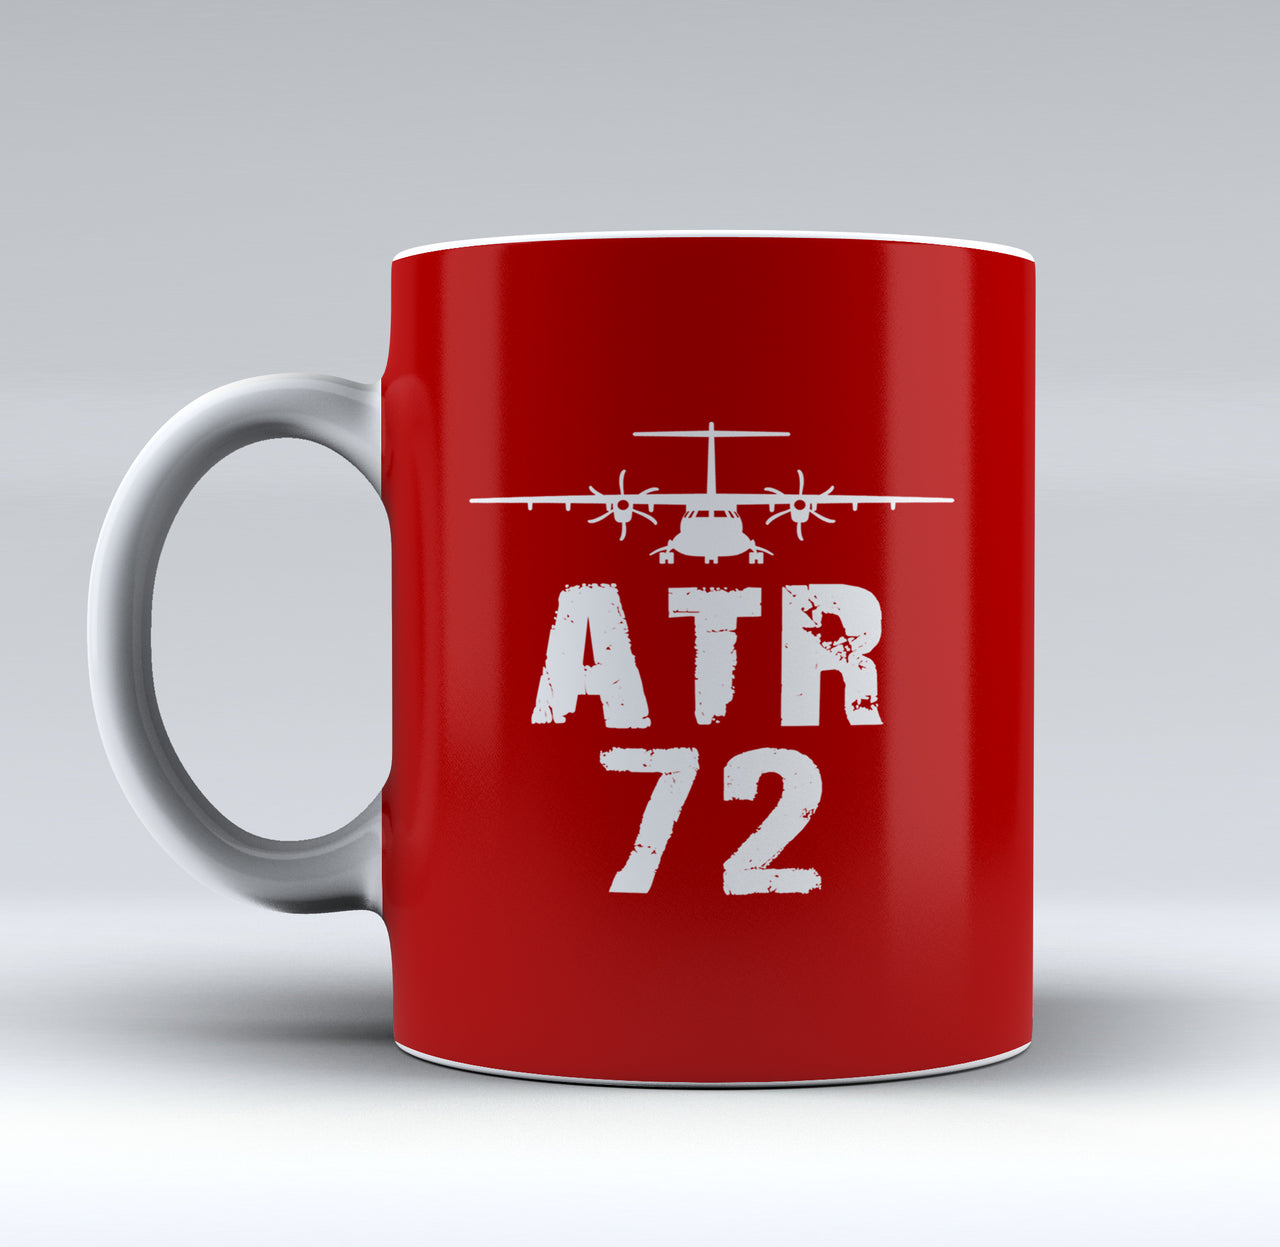 ATR-72 & Plane Designed Mugs